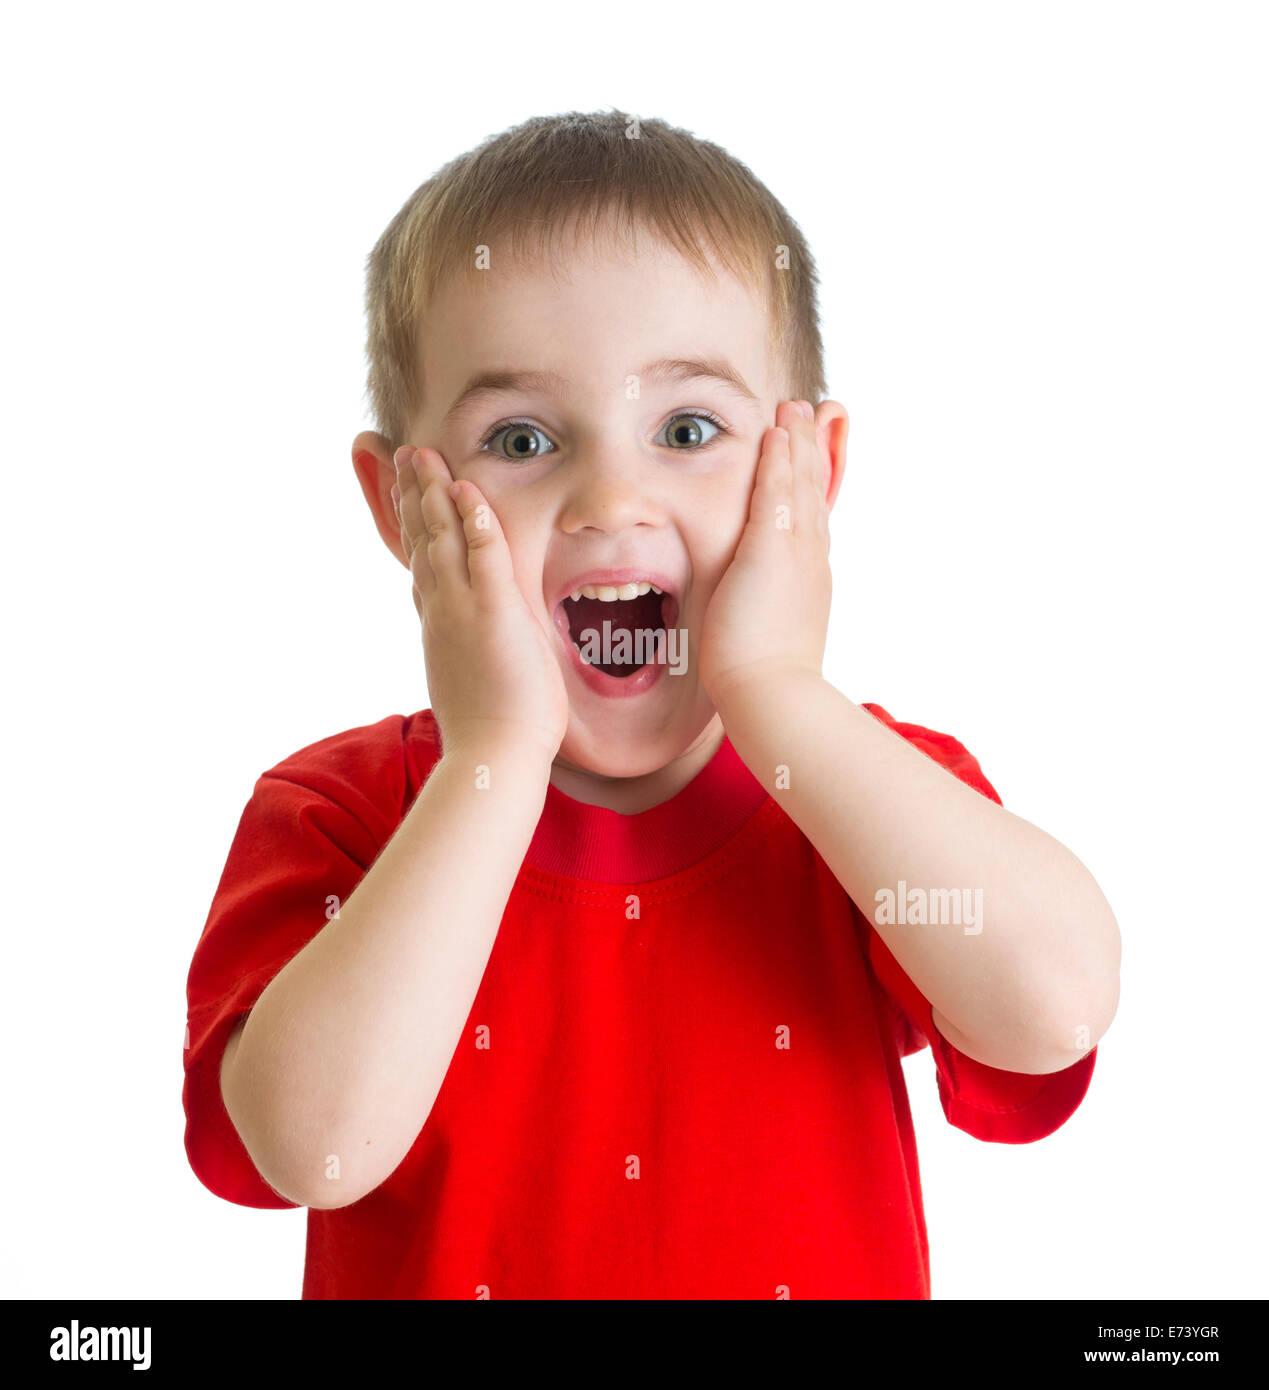 Surpris petit garçon portrait en tee-shirt rouge isolé Banque D'Images